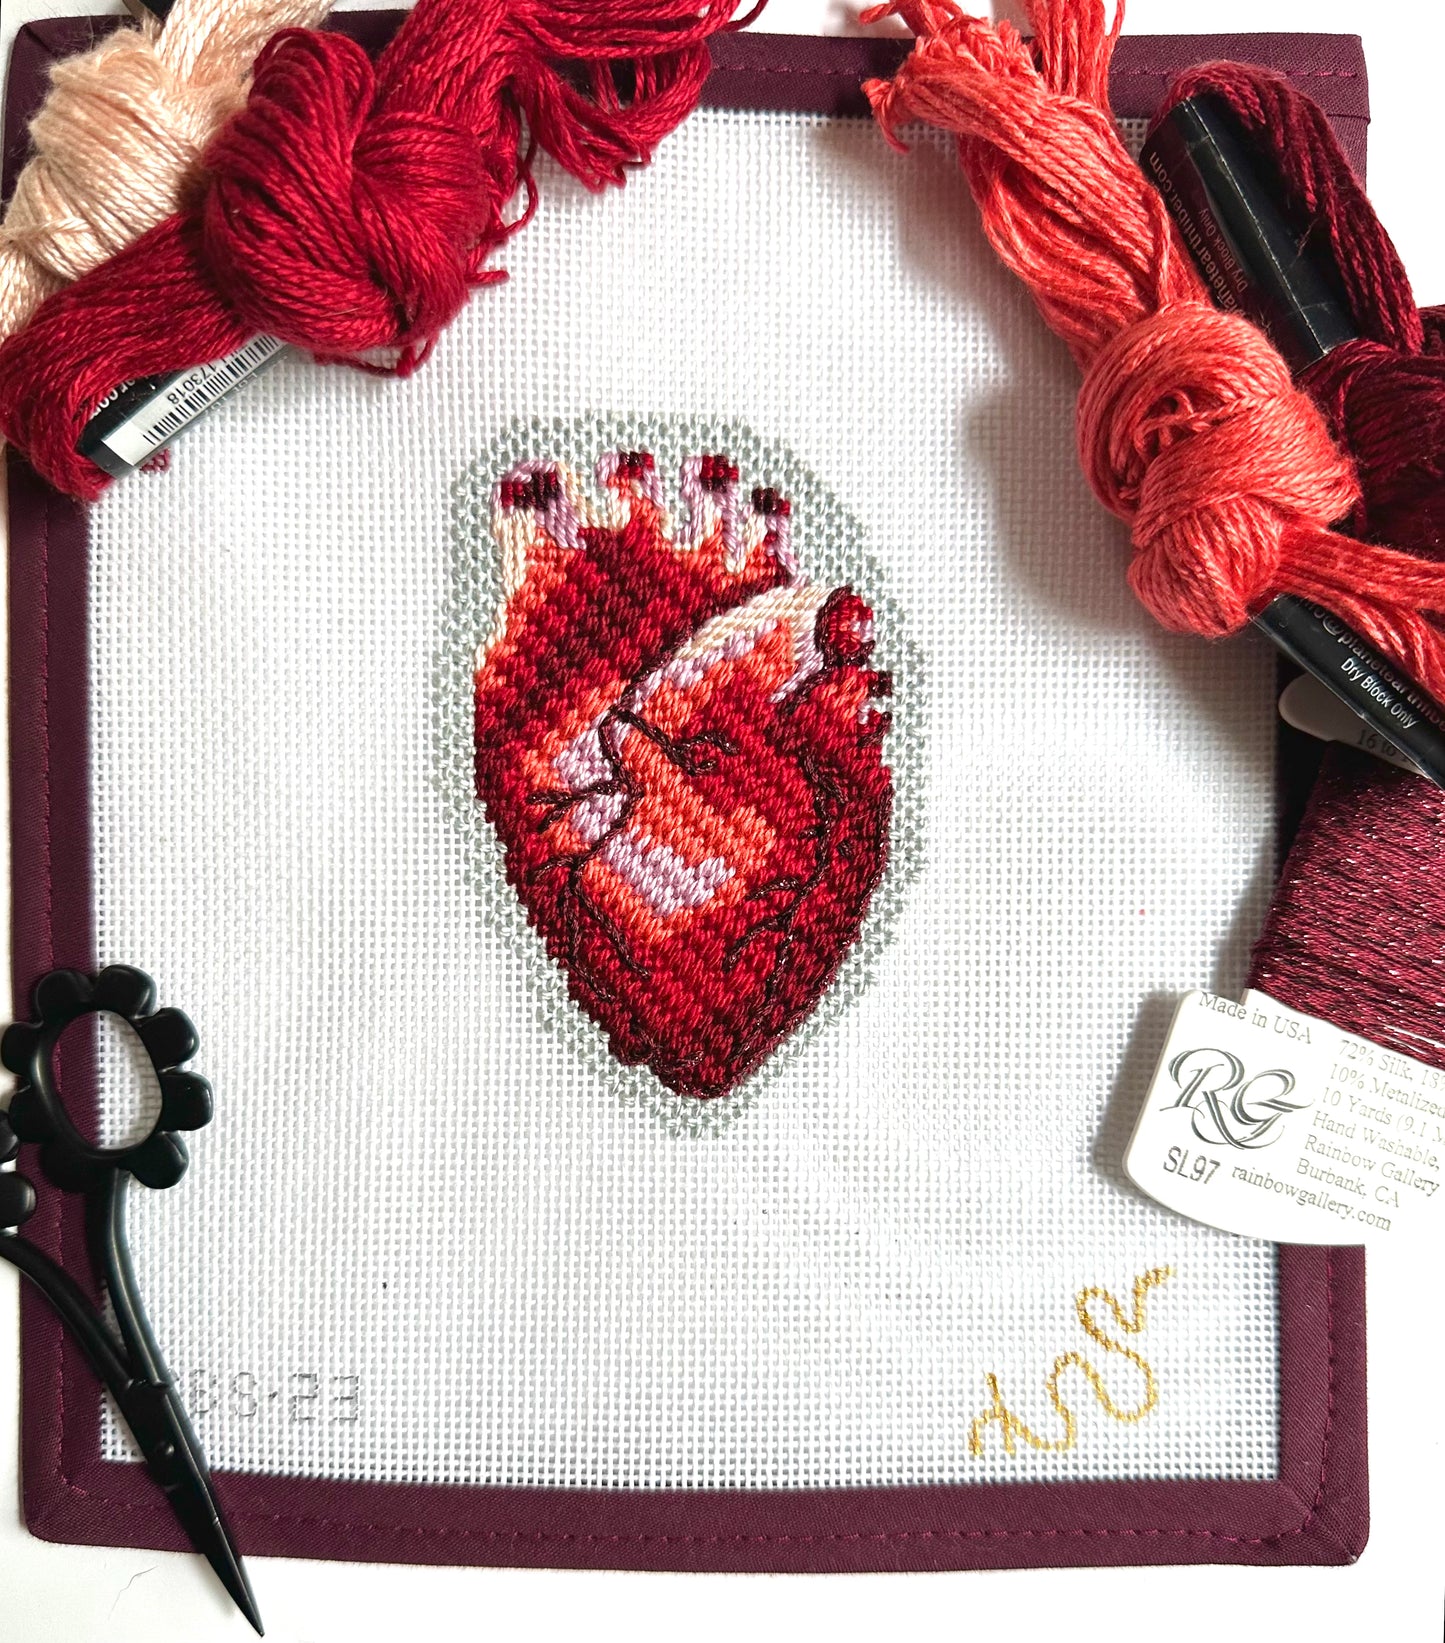 Anatomical Heart Cross Stitch Pattern Human Heart Embroidery